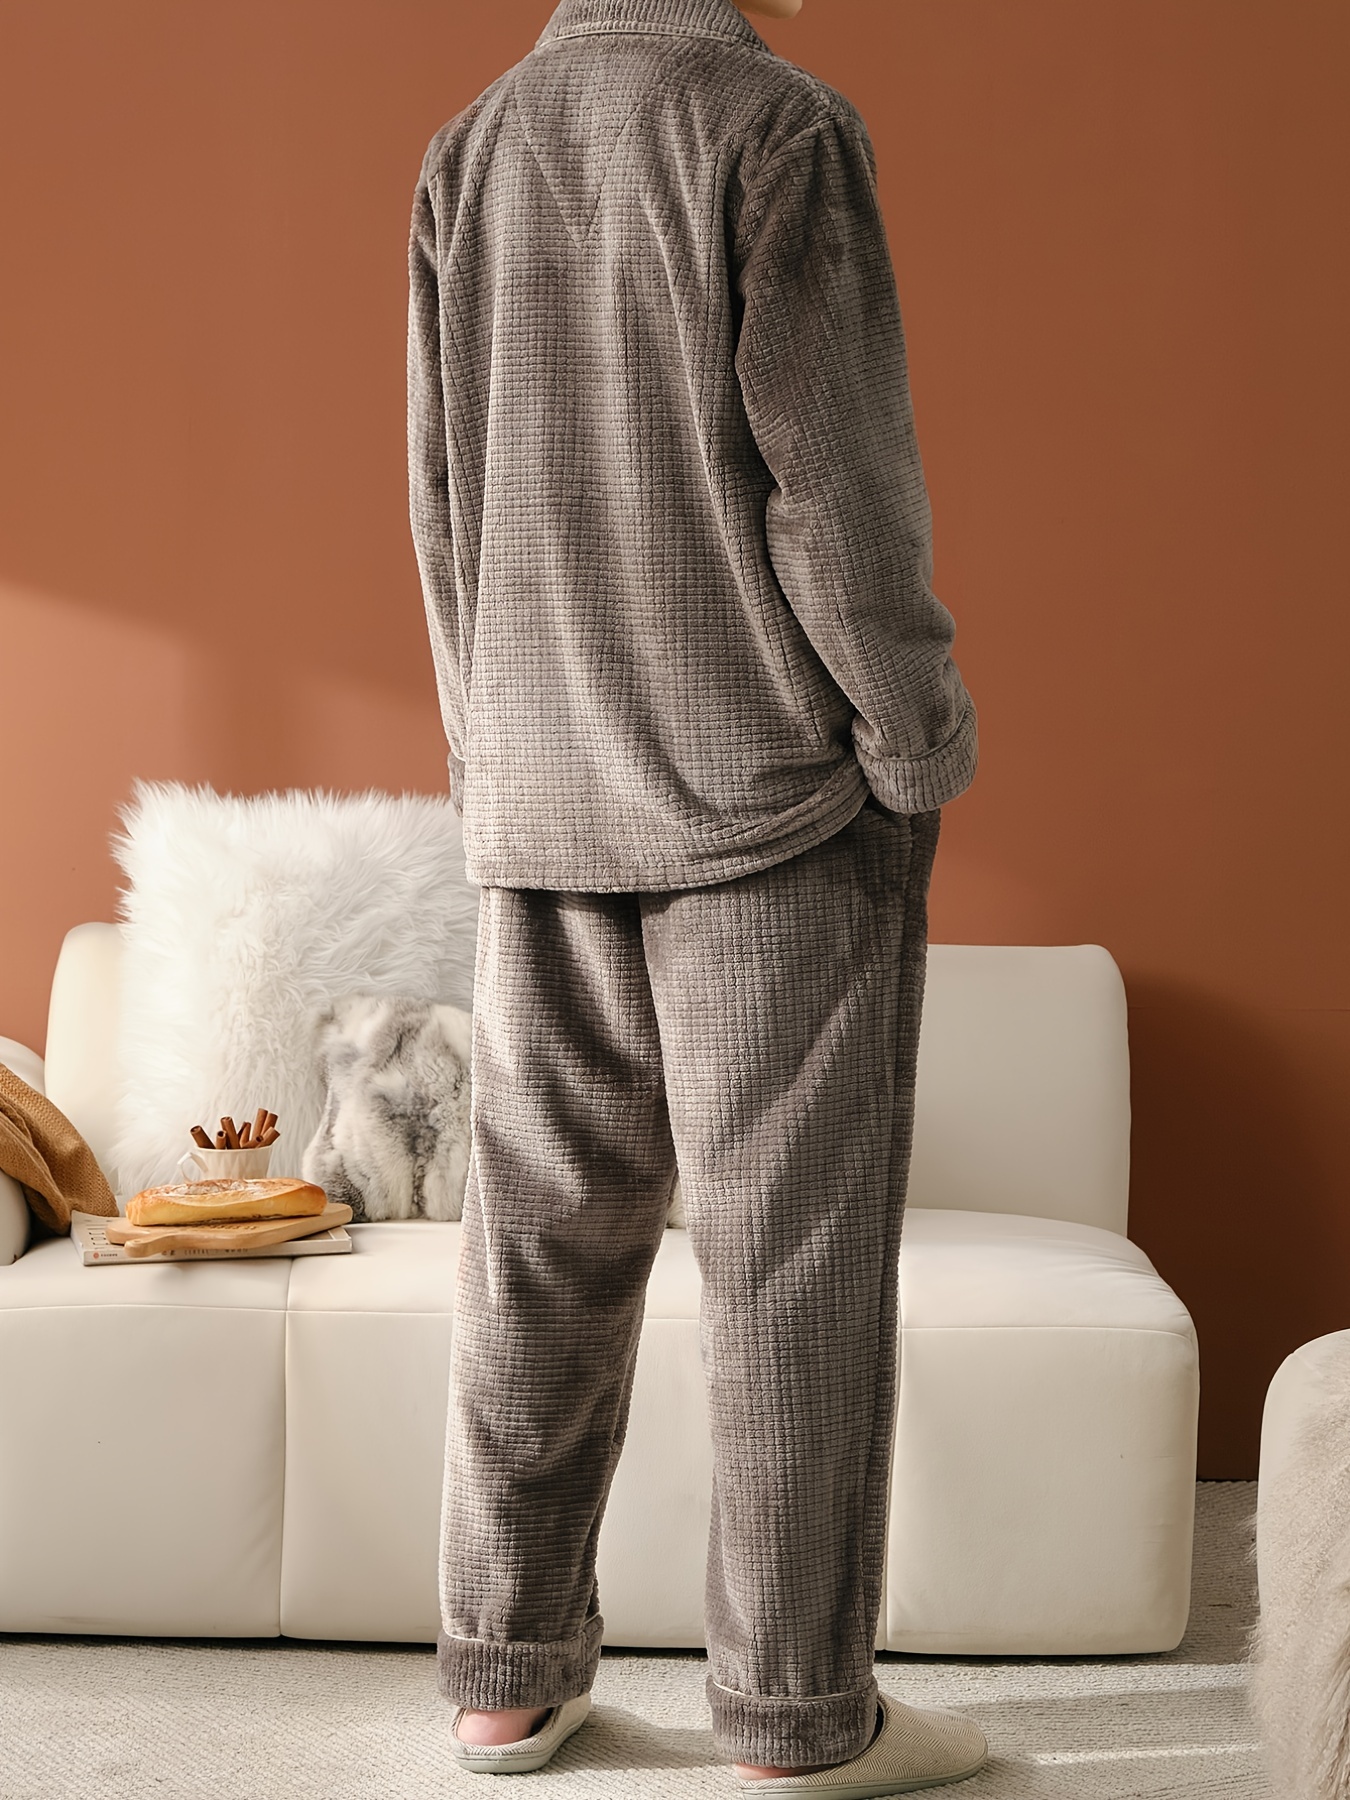 Cómodo pijama invierno manga larga hombre estilo clásico color antracita